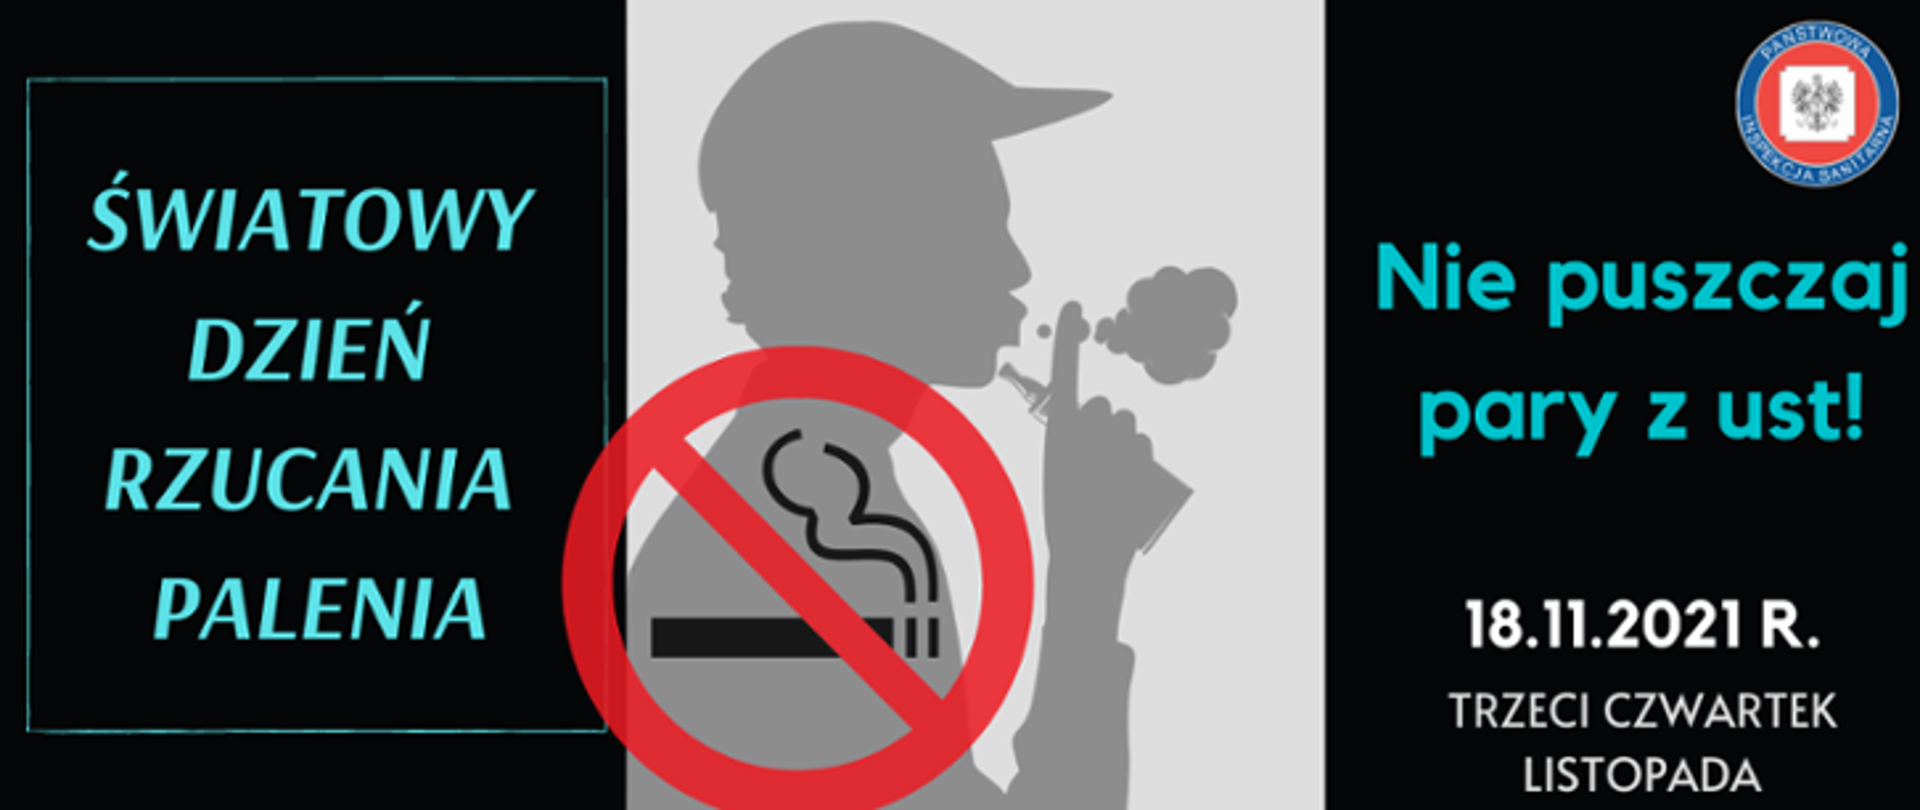 Grafika przedstawia cień osoby palącej oraz symbol zakazu palenia, który znajduje się w centrum. Po lewej stronie znajduje się napis: Światowy Dzień Rzucania Palenia. Po prawej stronie widnieje natomiast napis: Nie puszczaj pary z ust! 18.11.2021r. trzeci czwartek listopada.